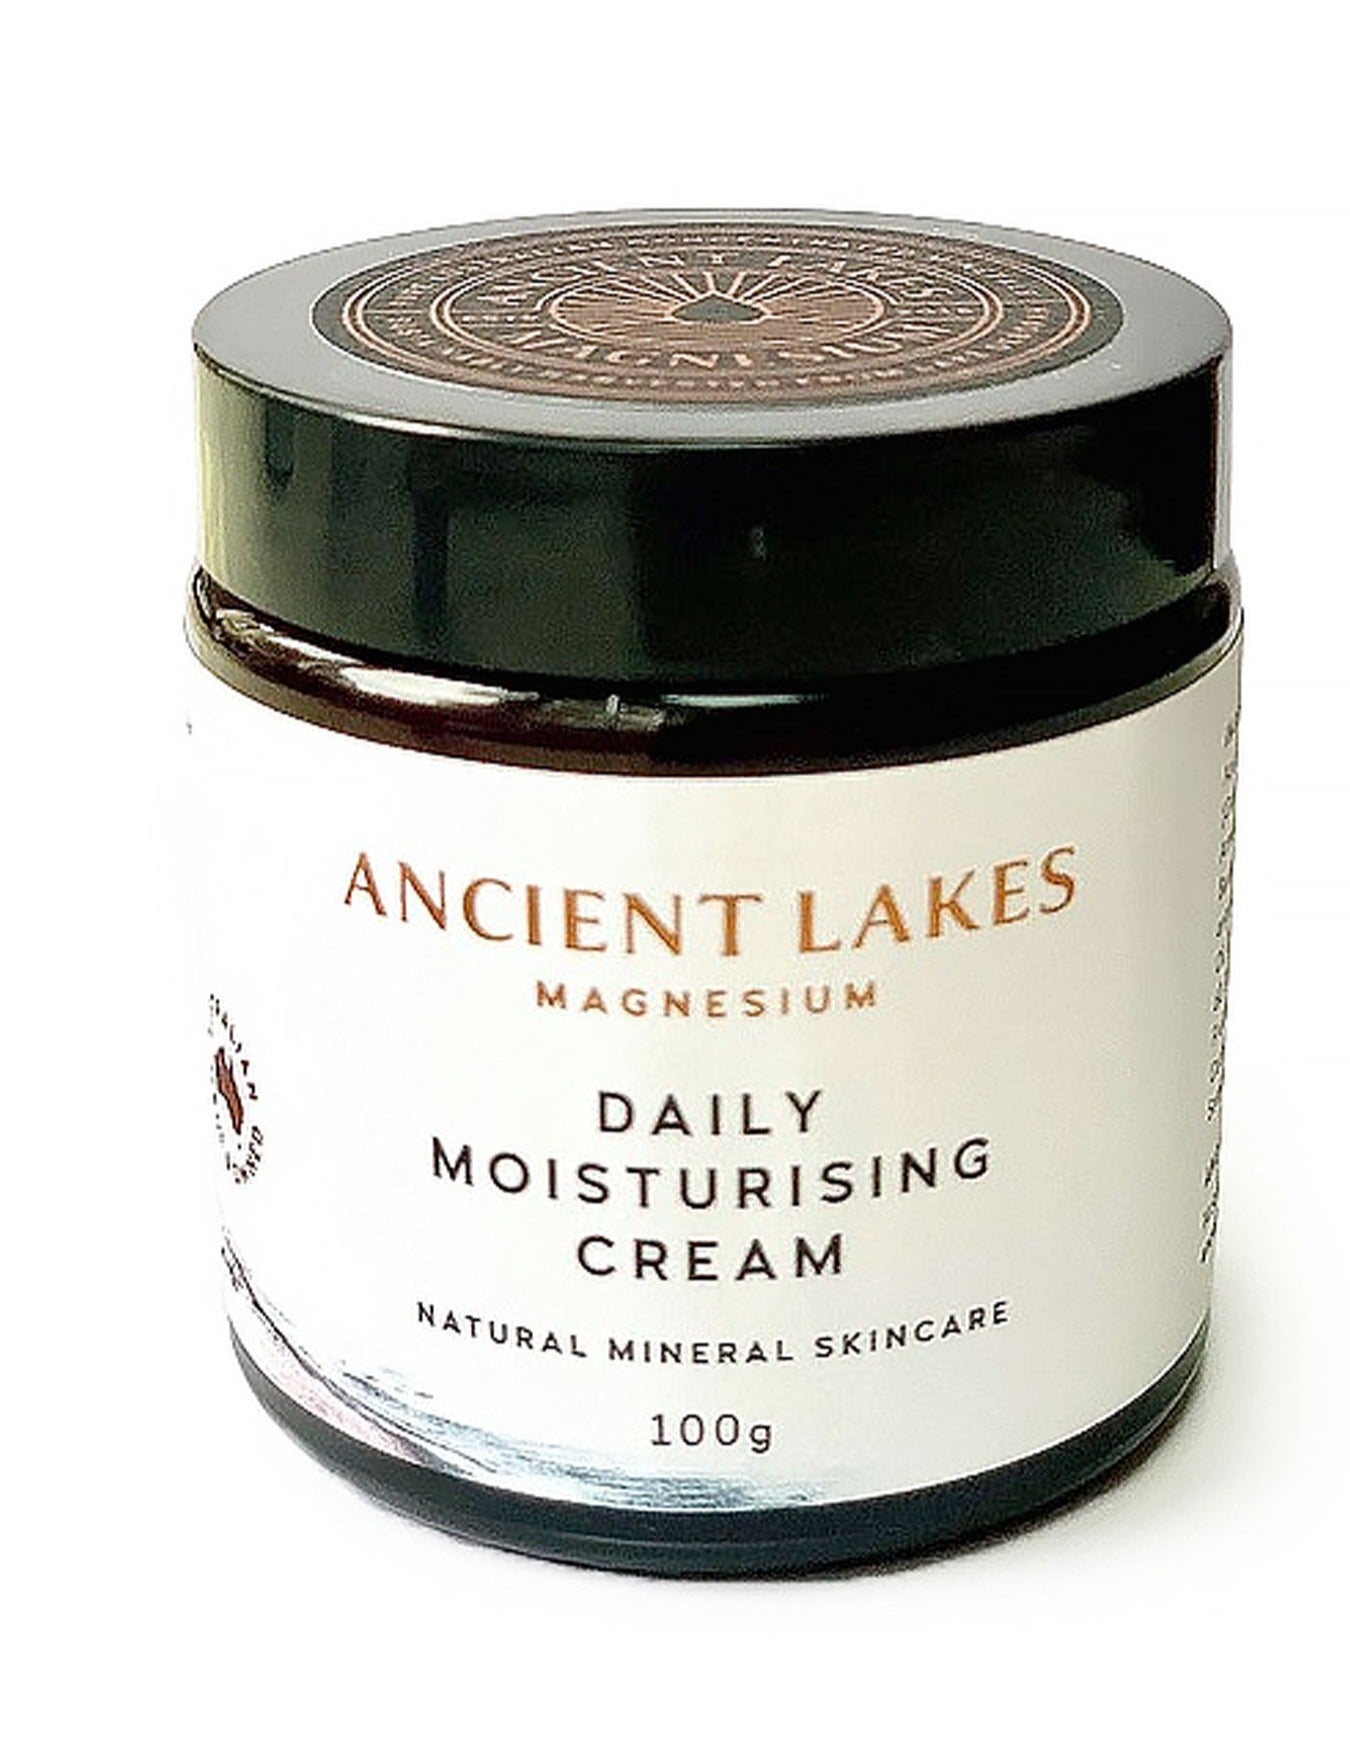 Ancient Lakes Magnesium Daily Moisturising Cream